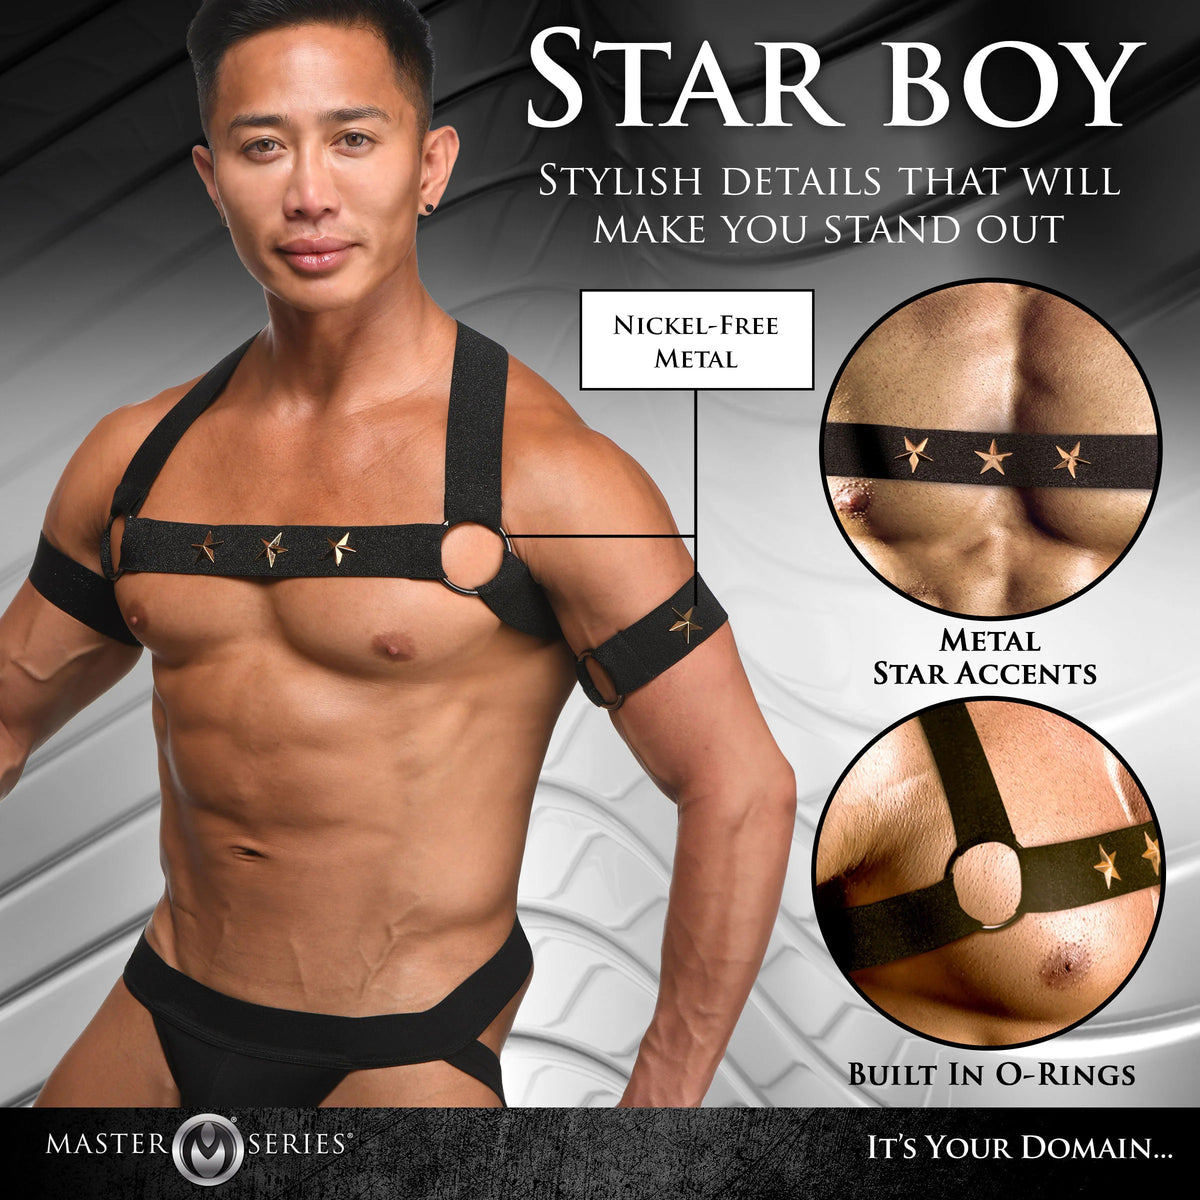 Arnés de pecho masculino Star Boy con brazaletes - Grande/extragrande - Negro